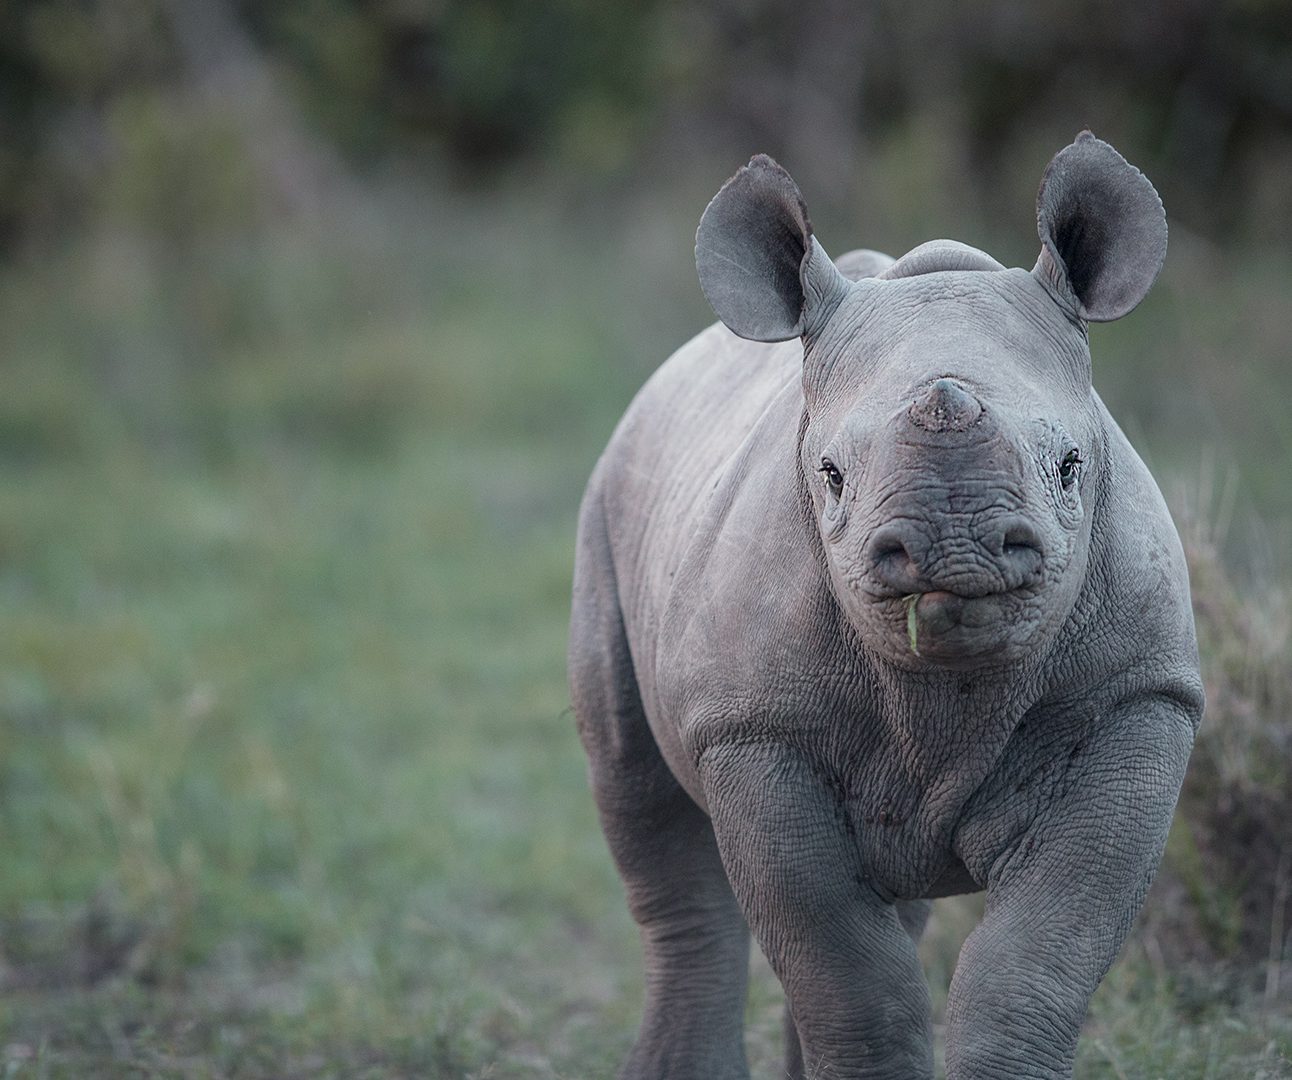 A baby rhino walking towards the camera